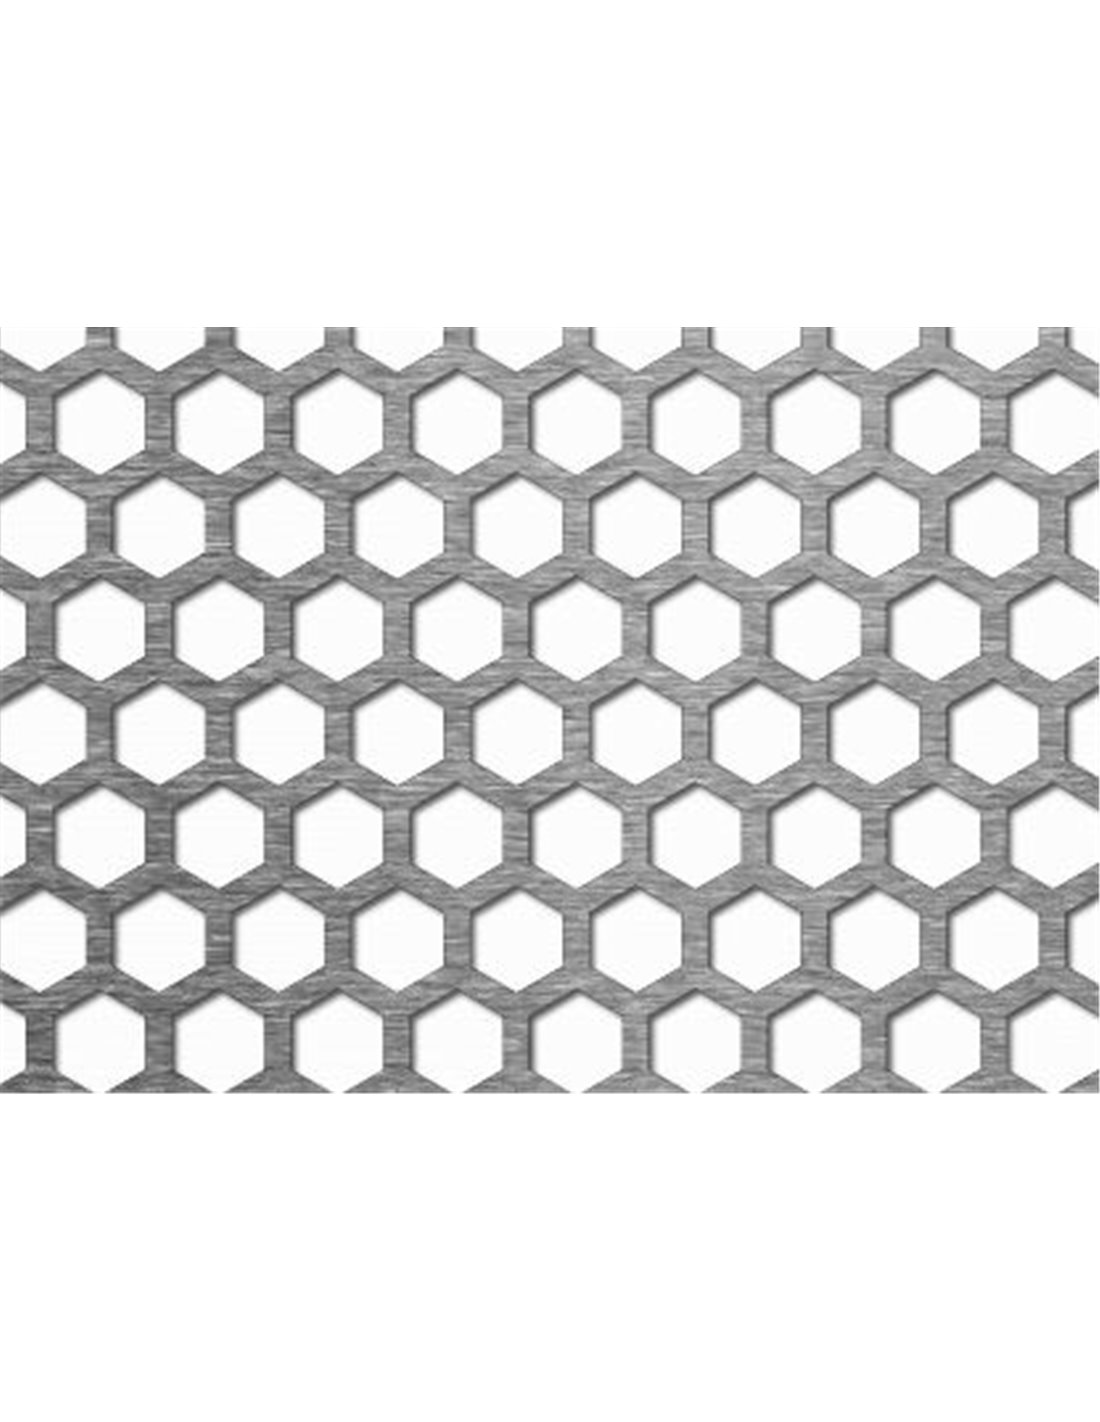 Tôle perforée Hexagonal brute